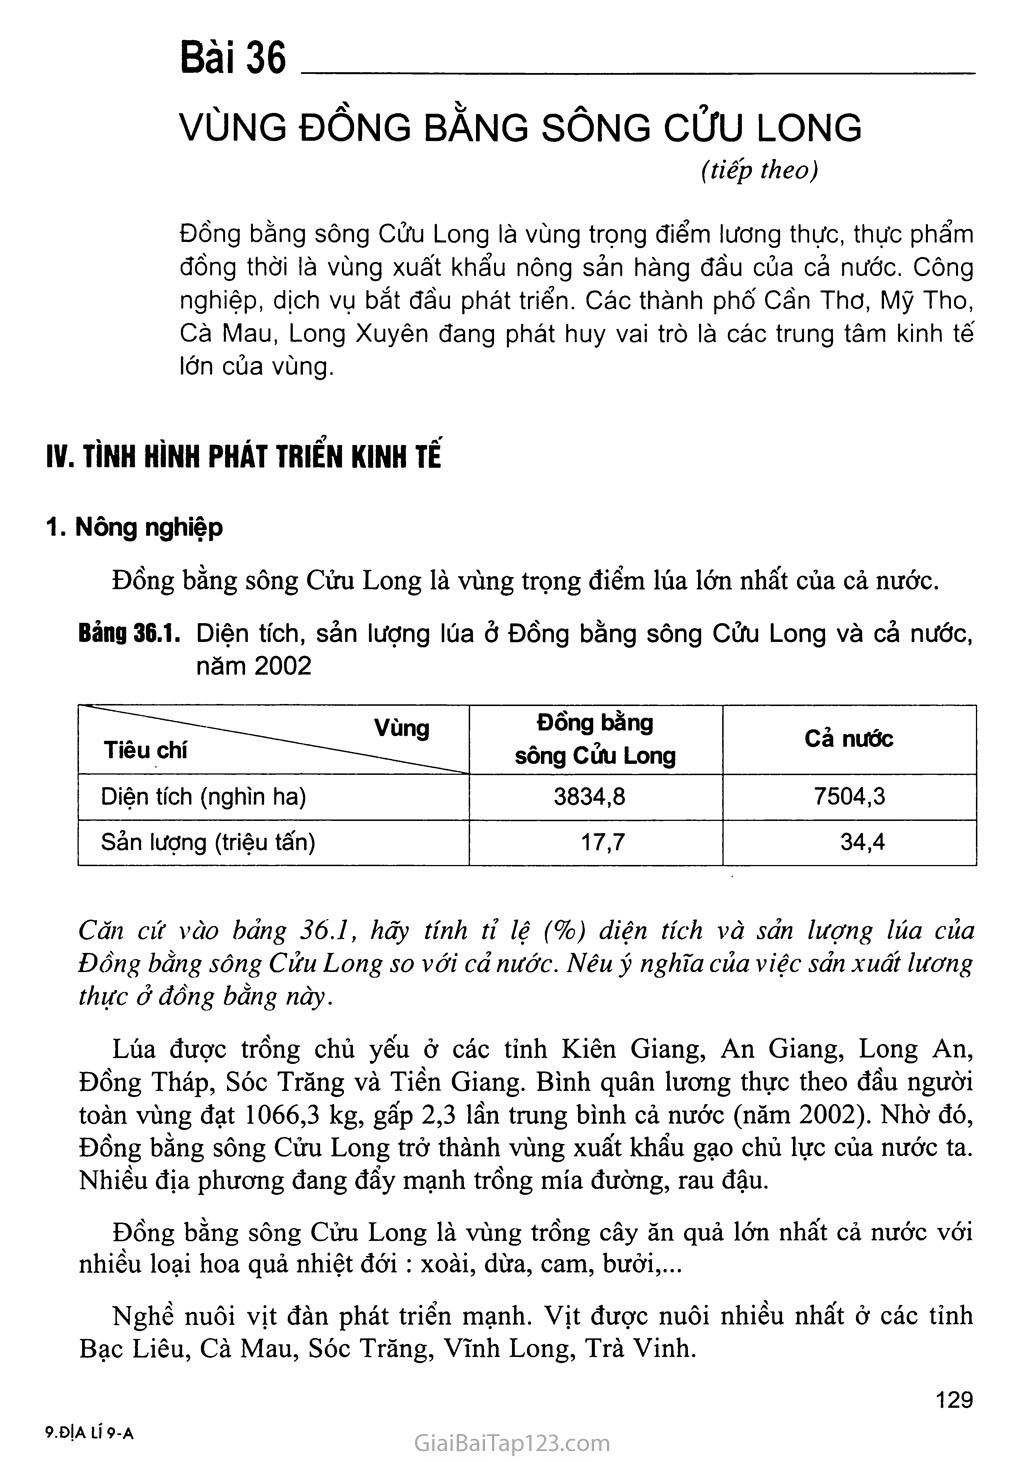 Bài 36. Vùng Đồng bằng sông Cửu Long (tiếp theo) trang 1